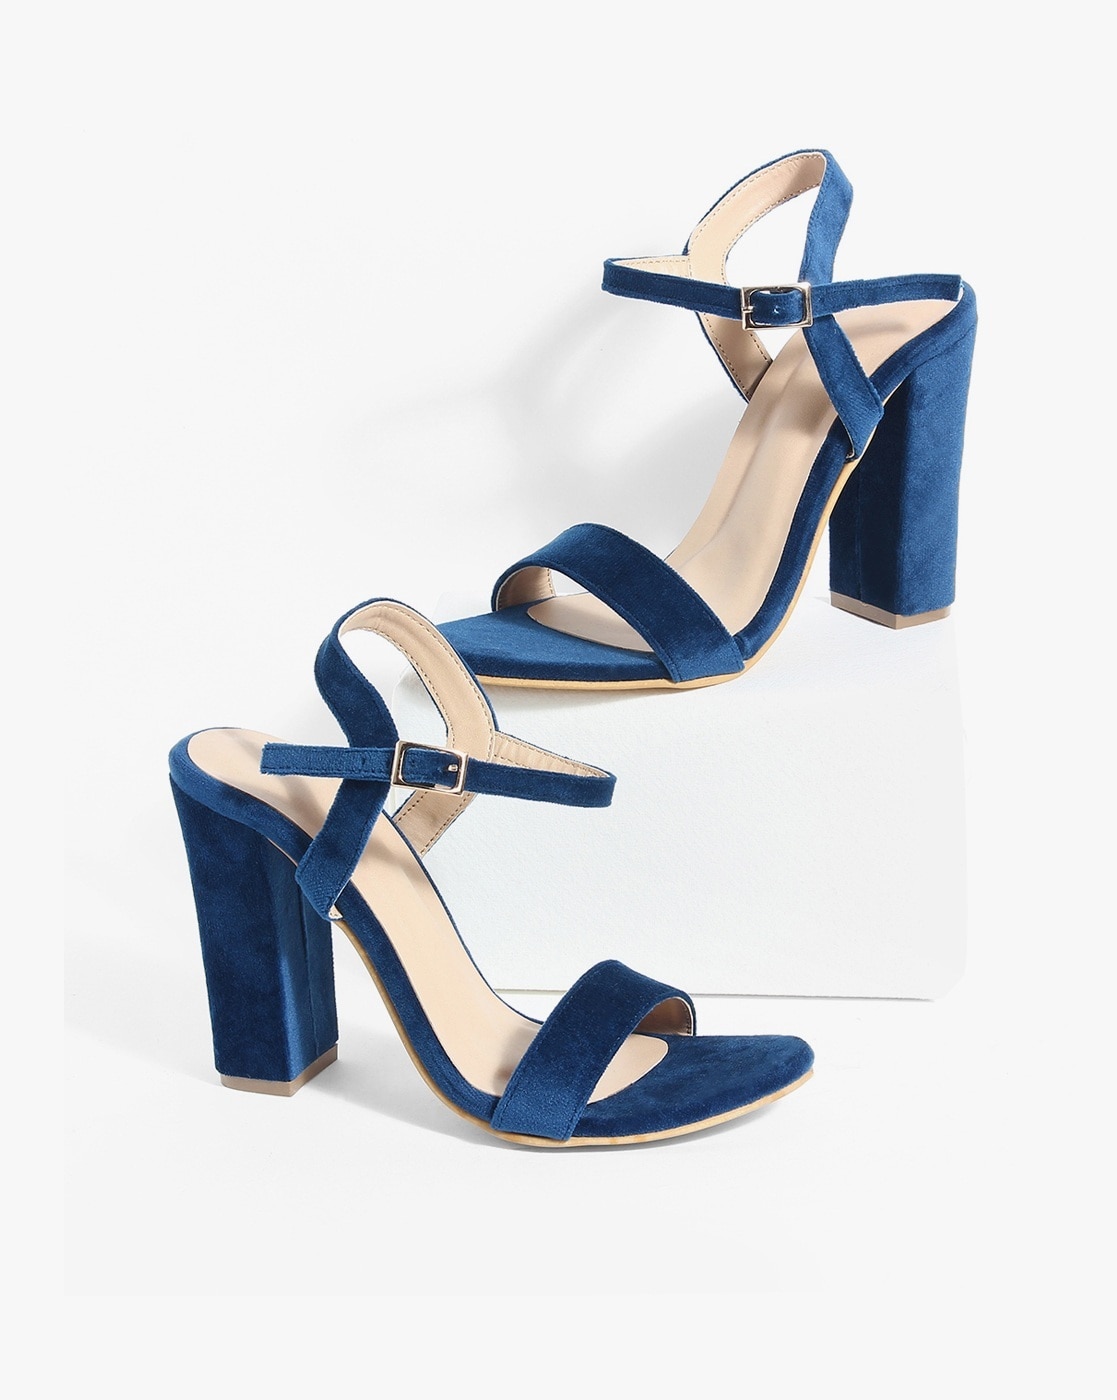 Buy Women Blue Casual Heels Online - 729832 | Allen Solly-gemektower.com.vn